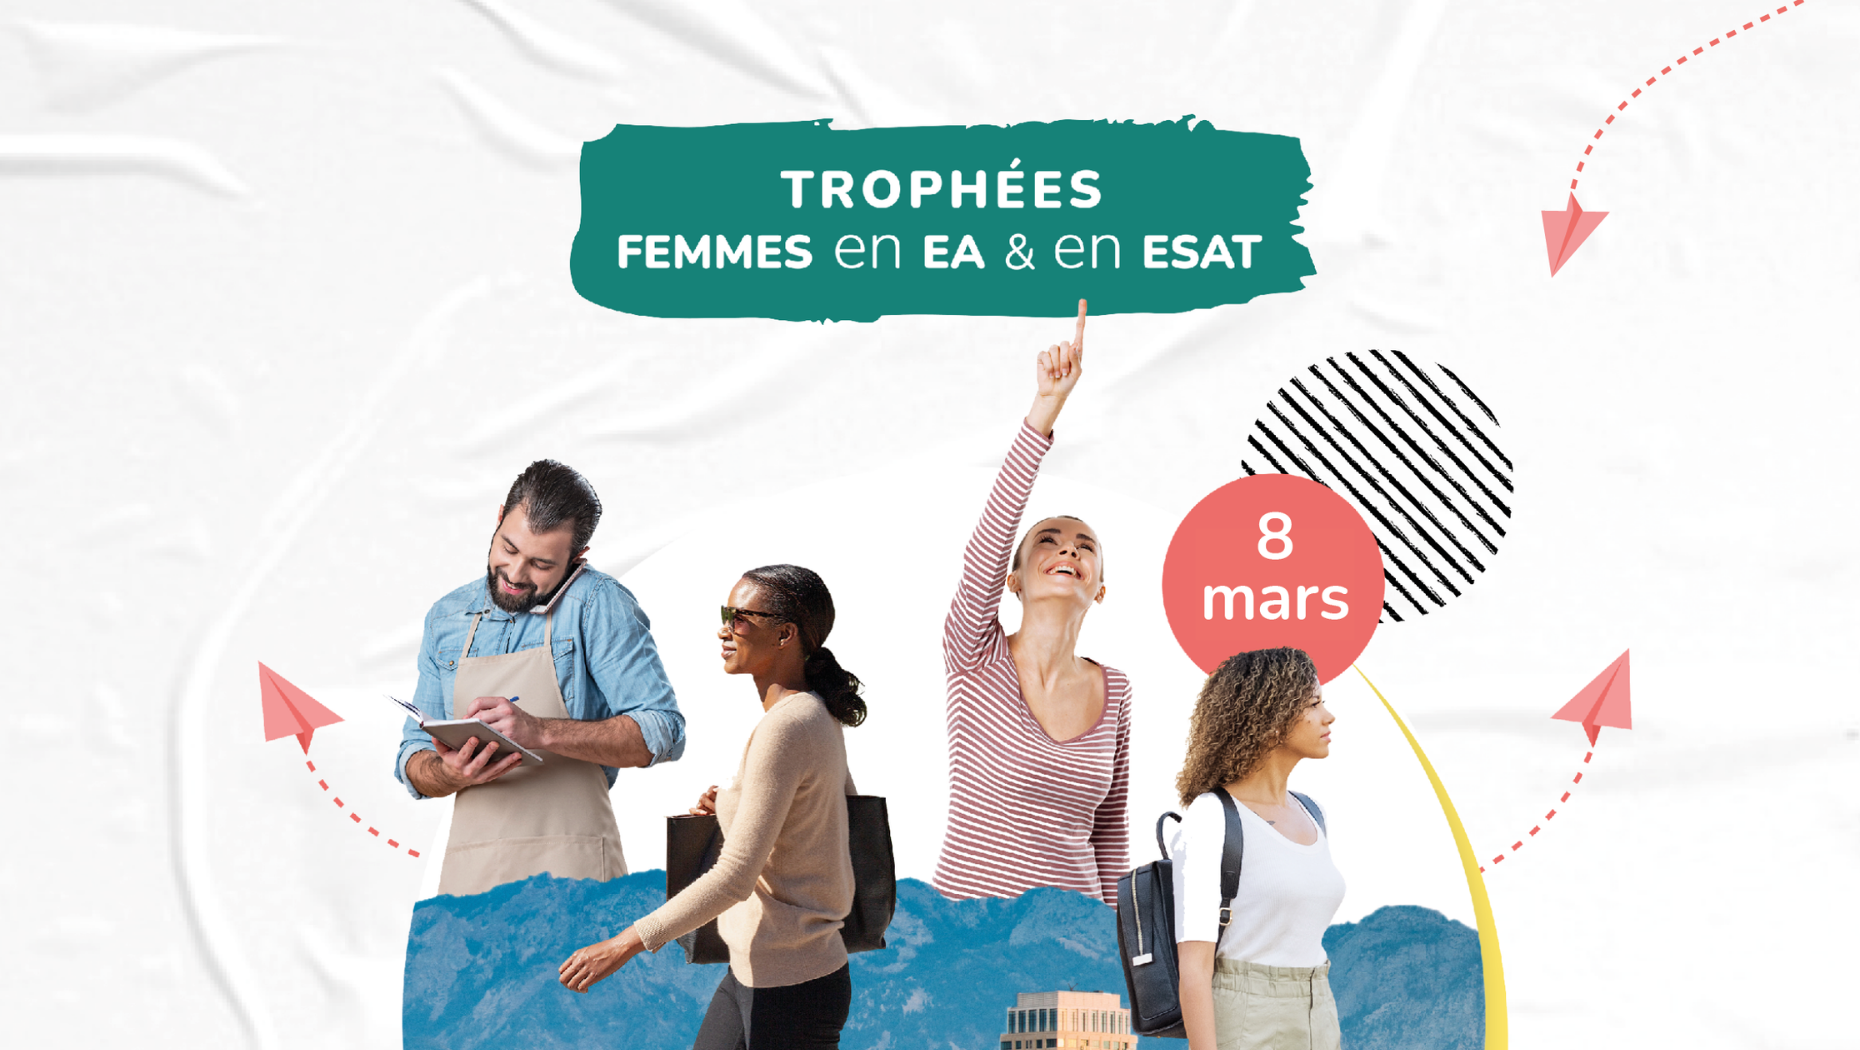 Trophées Femmes EA Entreprise Adaptée